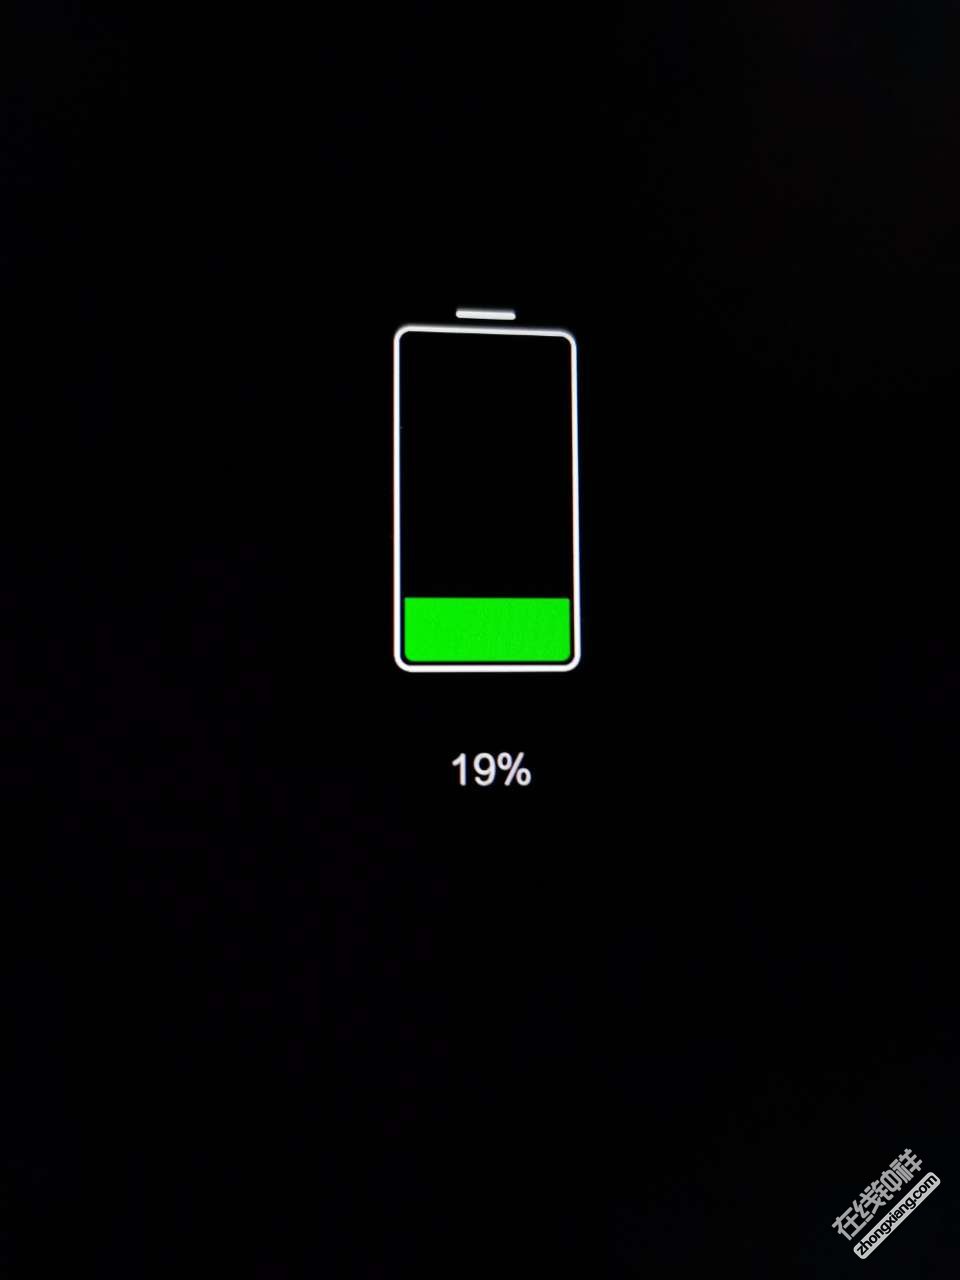 有谁和我手机一样,一到20%电量就关机的?记得只有苹果